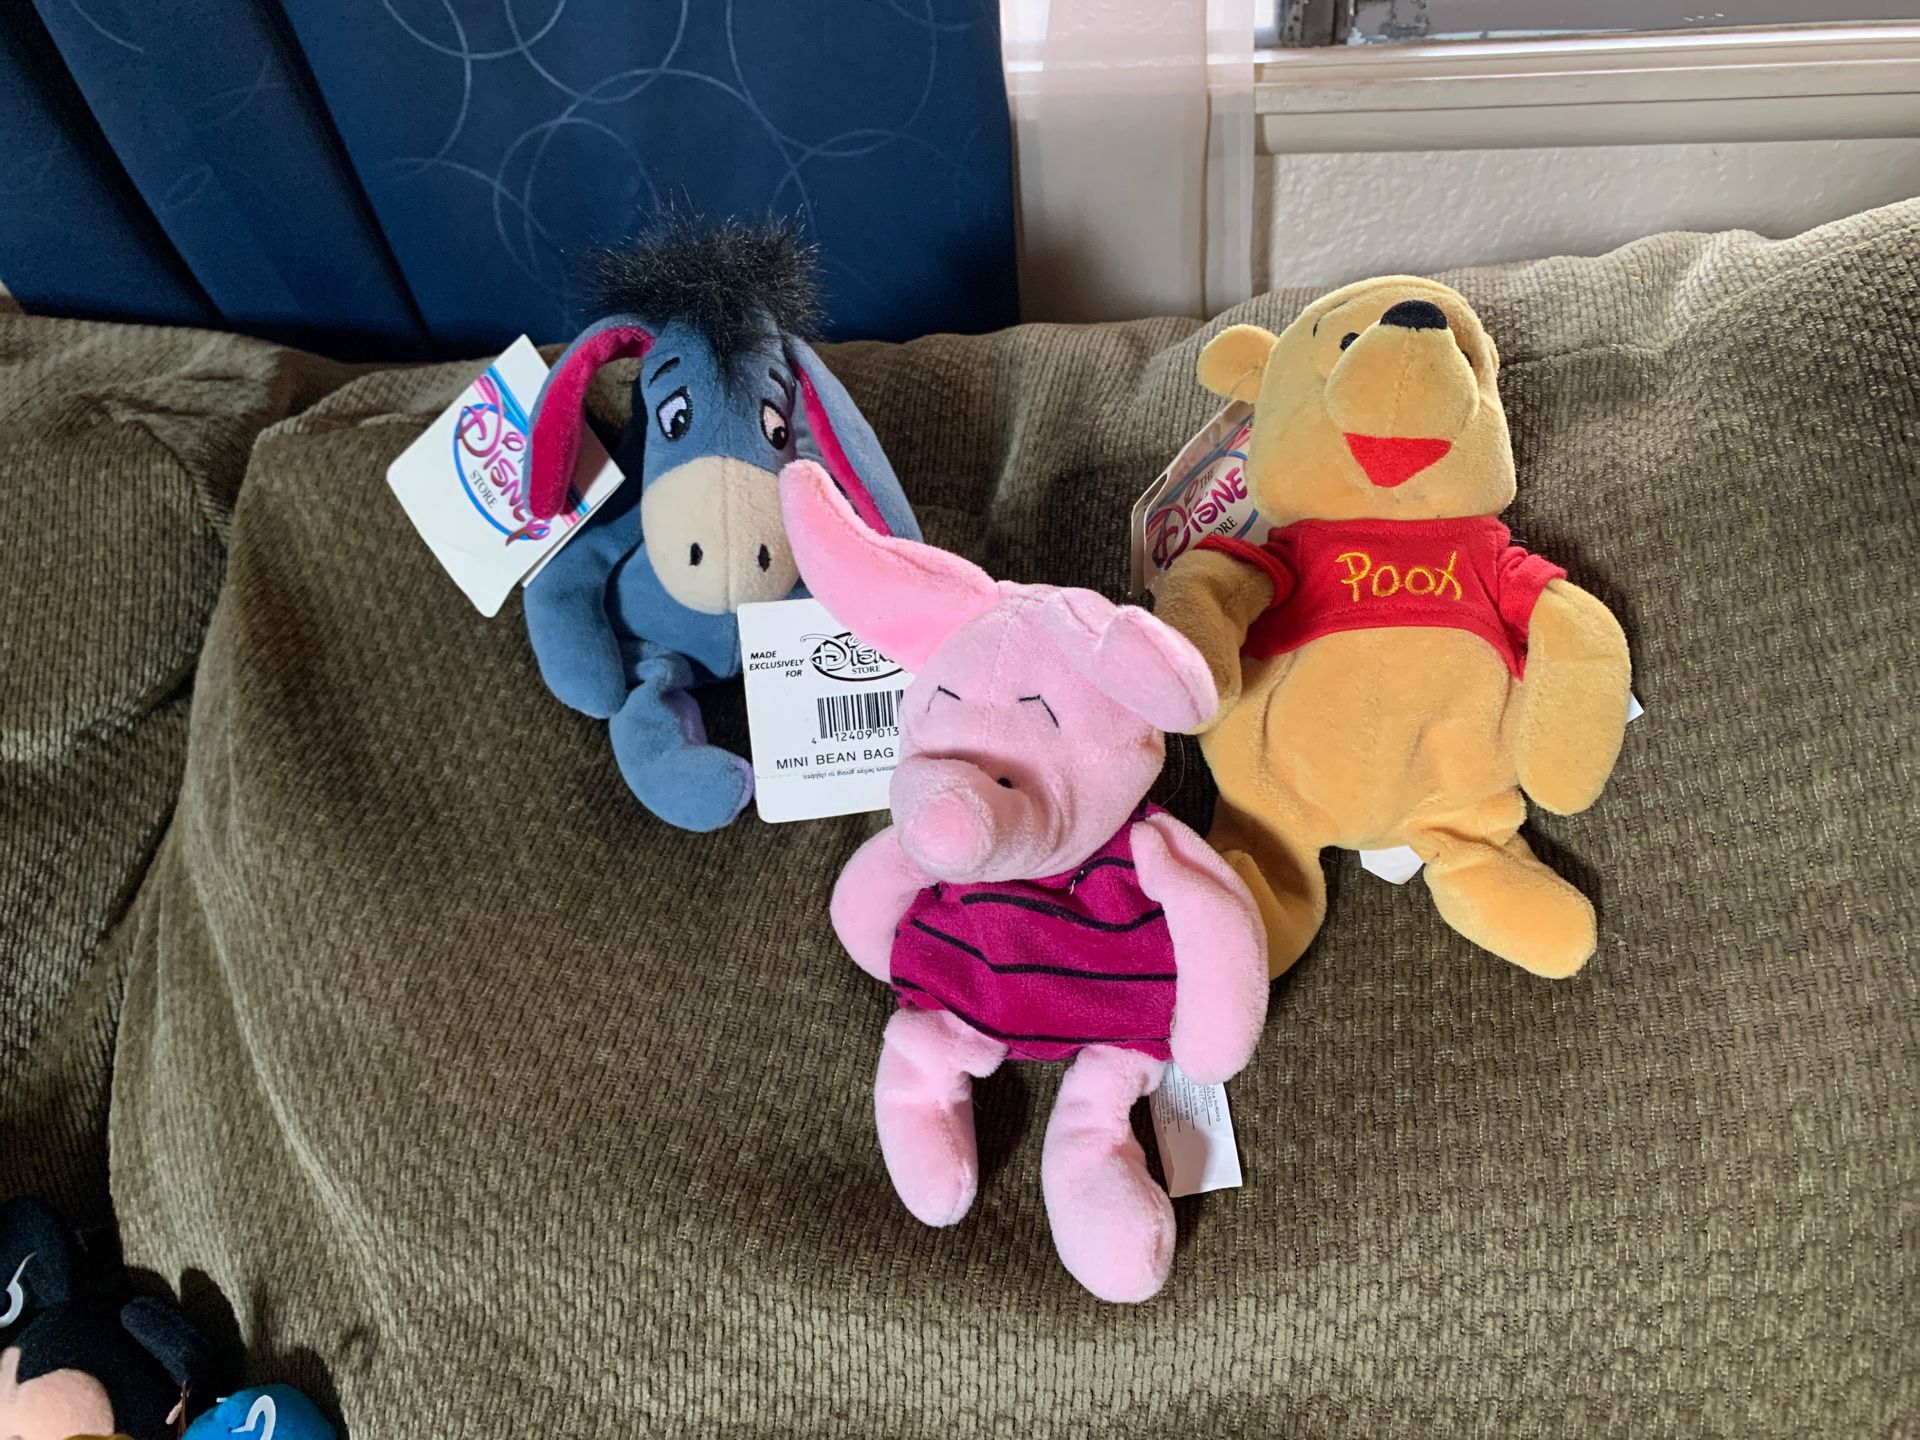 Winnie the Pooh, Eeyore, and Piglet